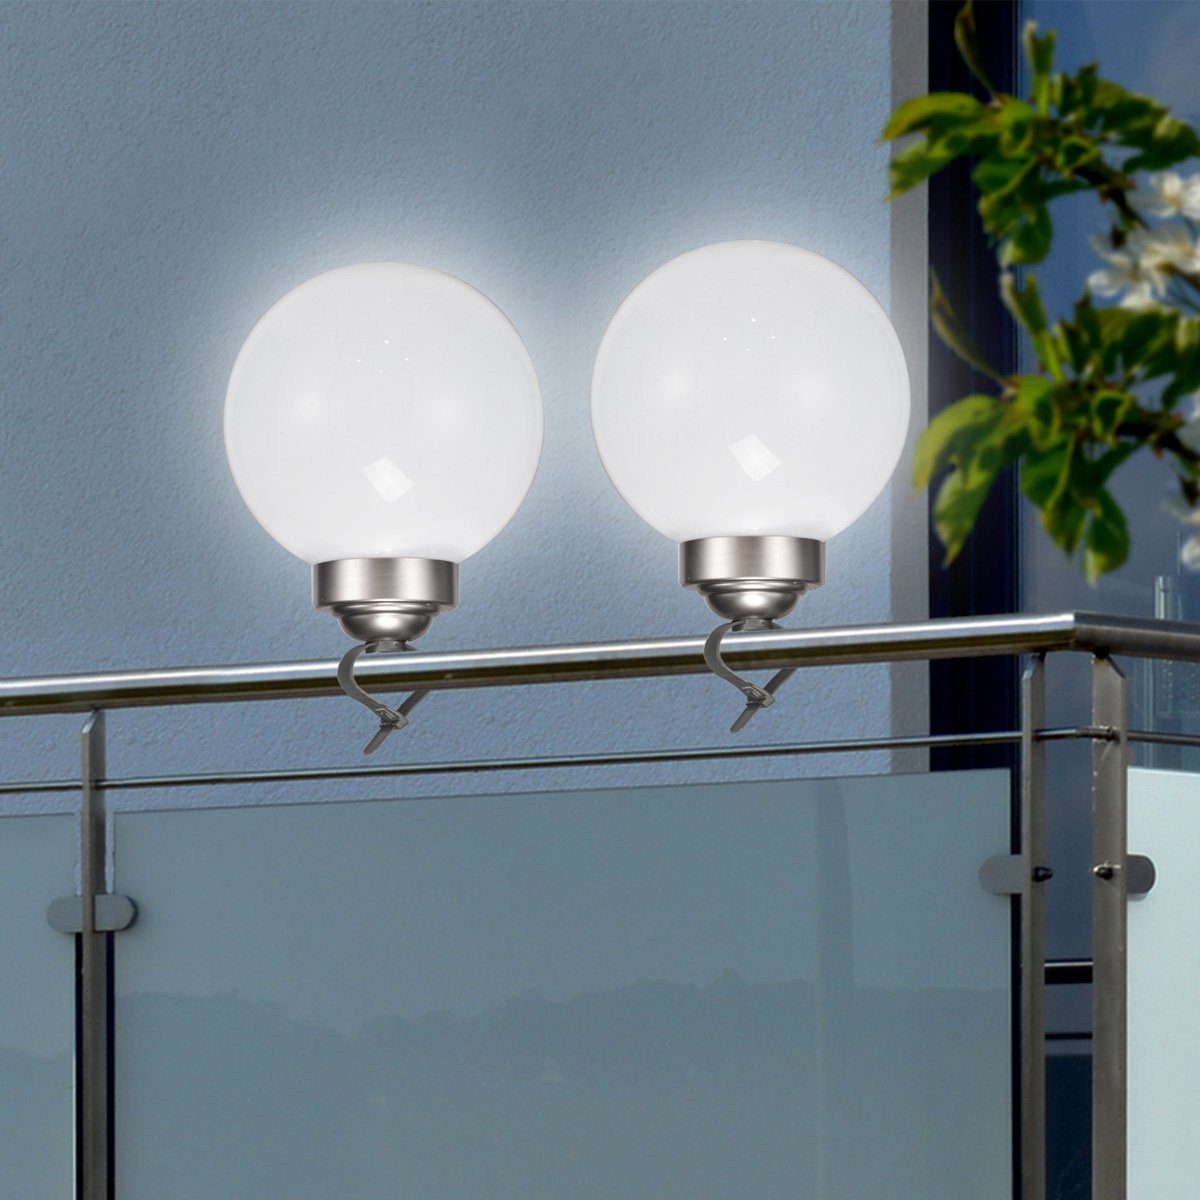 MARELIDA LED Solarleuchte LED Solar Kugellampe 2in1 D: 20cm inkl. Clip Erdspieß Balkon Gelände, LED Classic, kaltweiss (5300K bis 6000K)